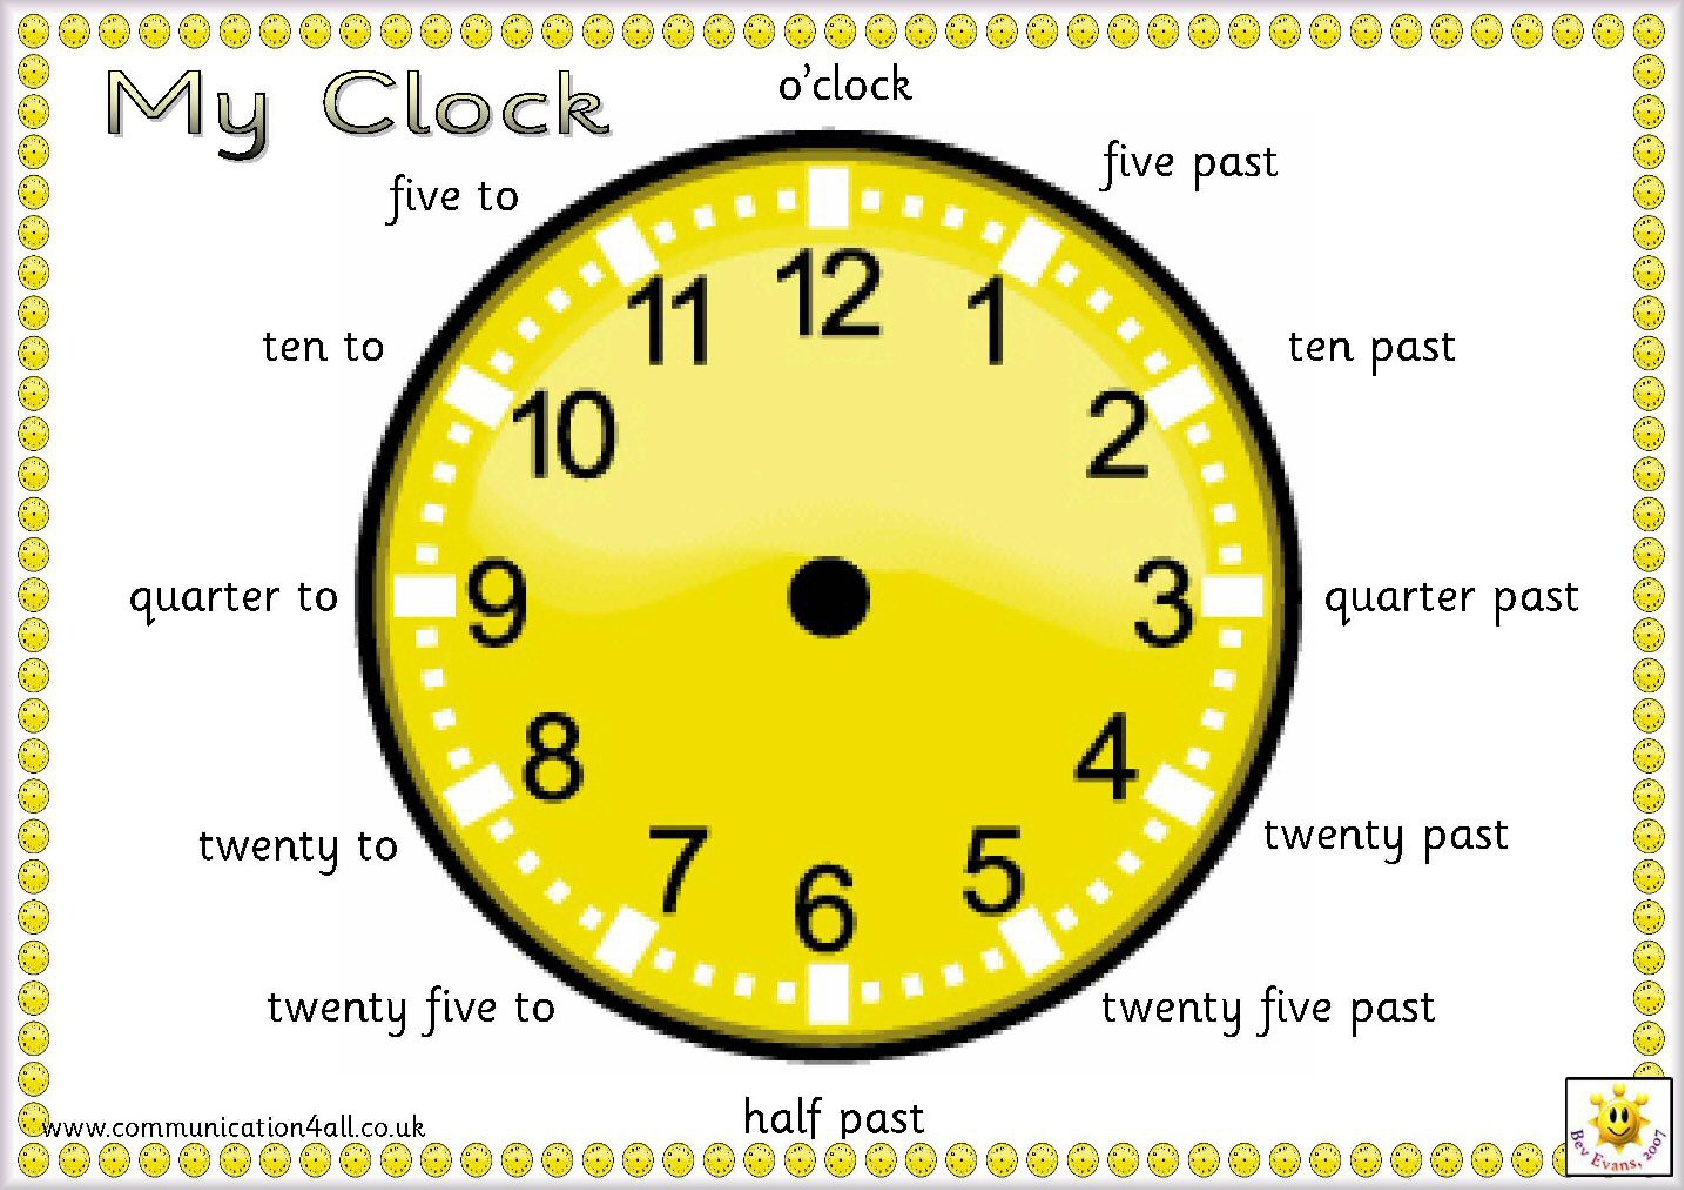 Английский язык 9 часов. Часы на английском. Часы на английском для малышей. Циферблат часов английский язык. Часы для изучения времени.